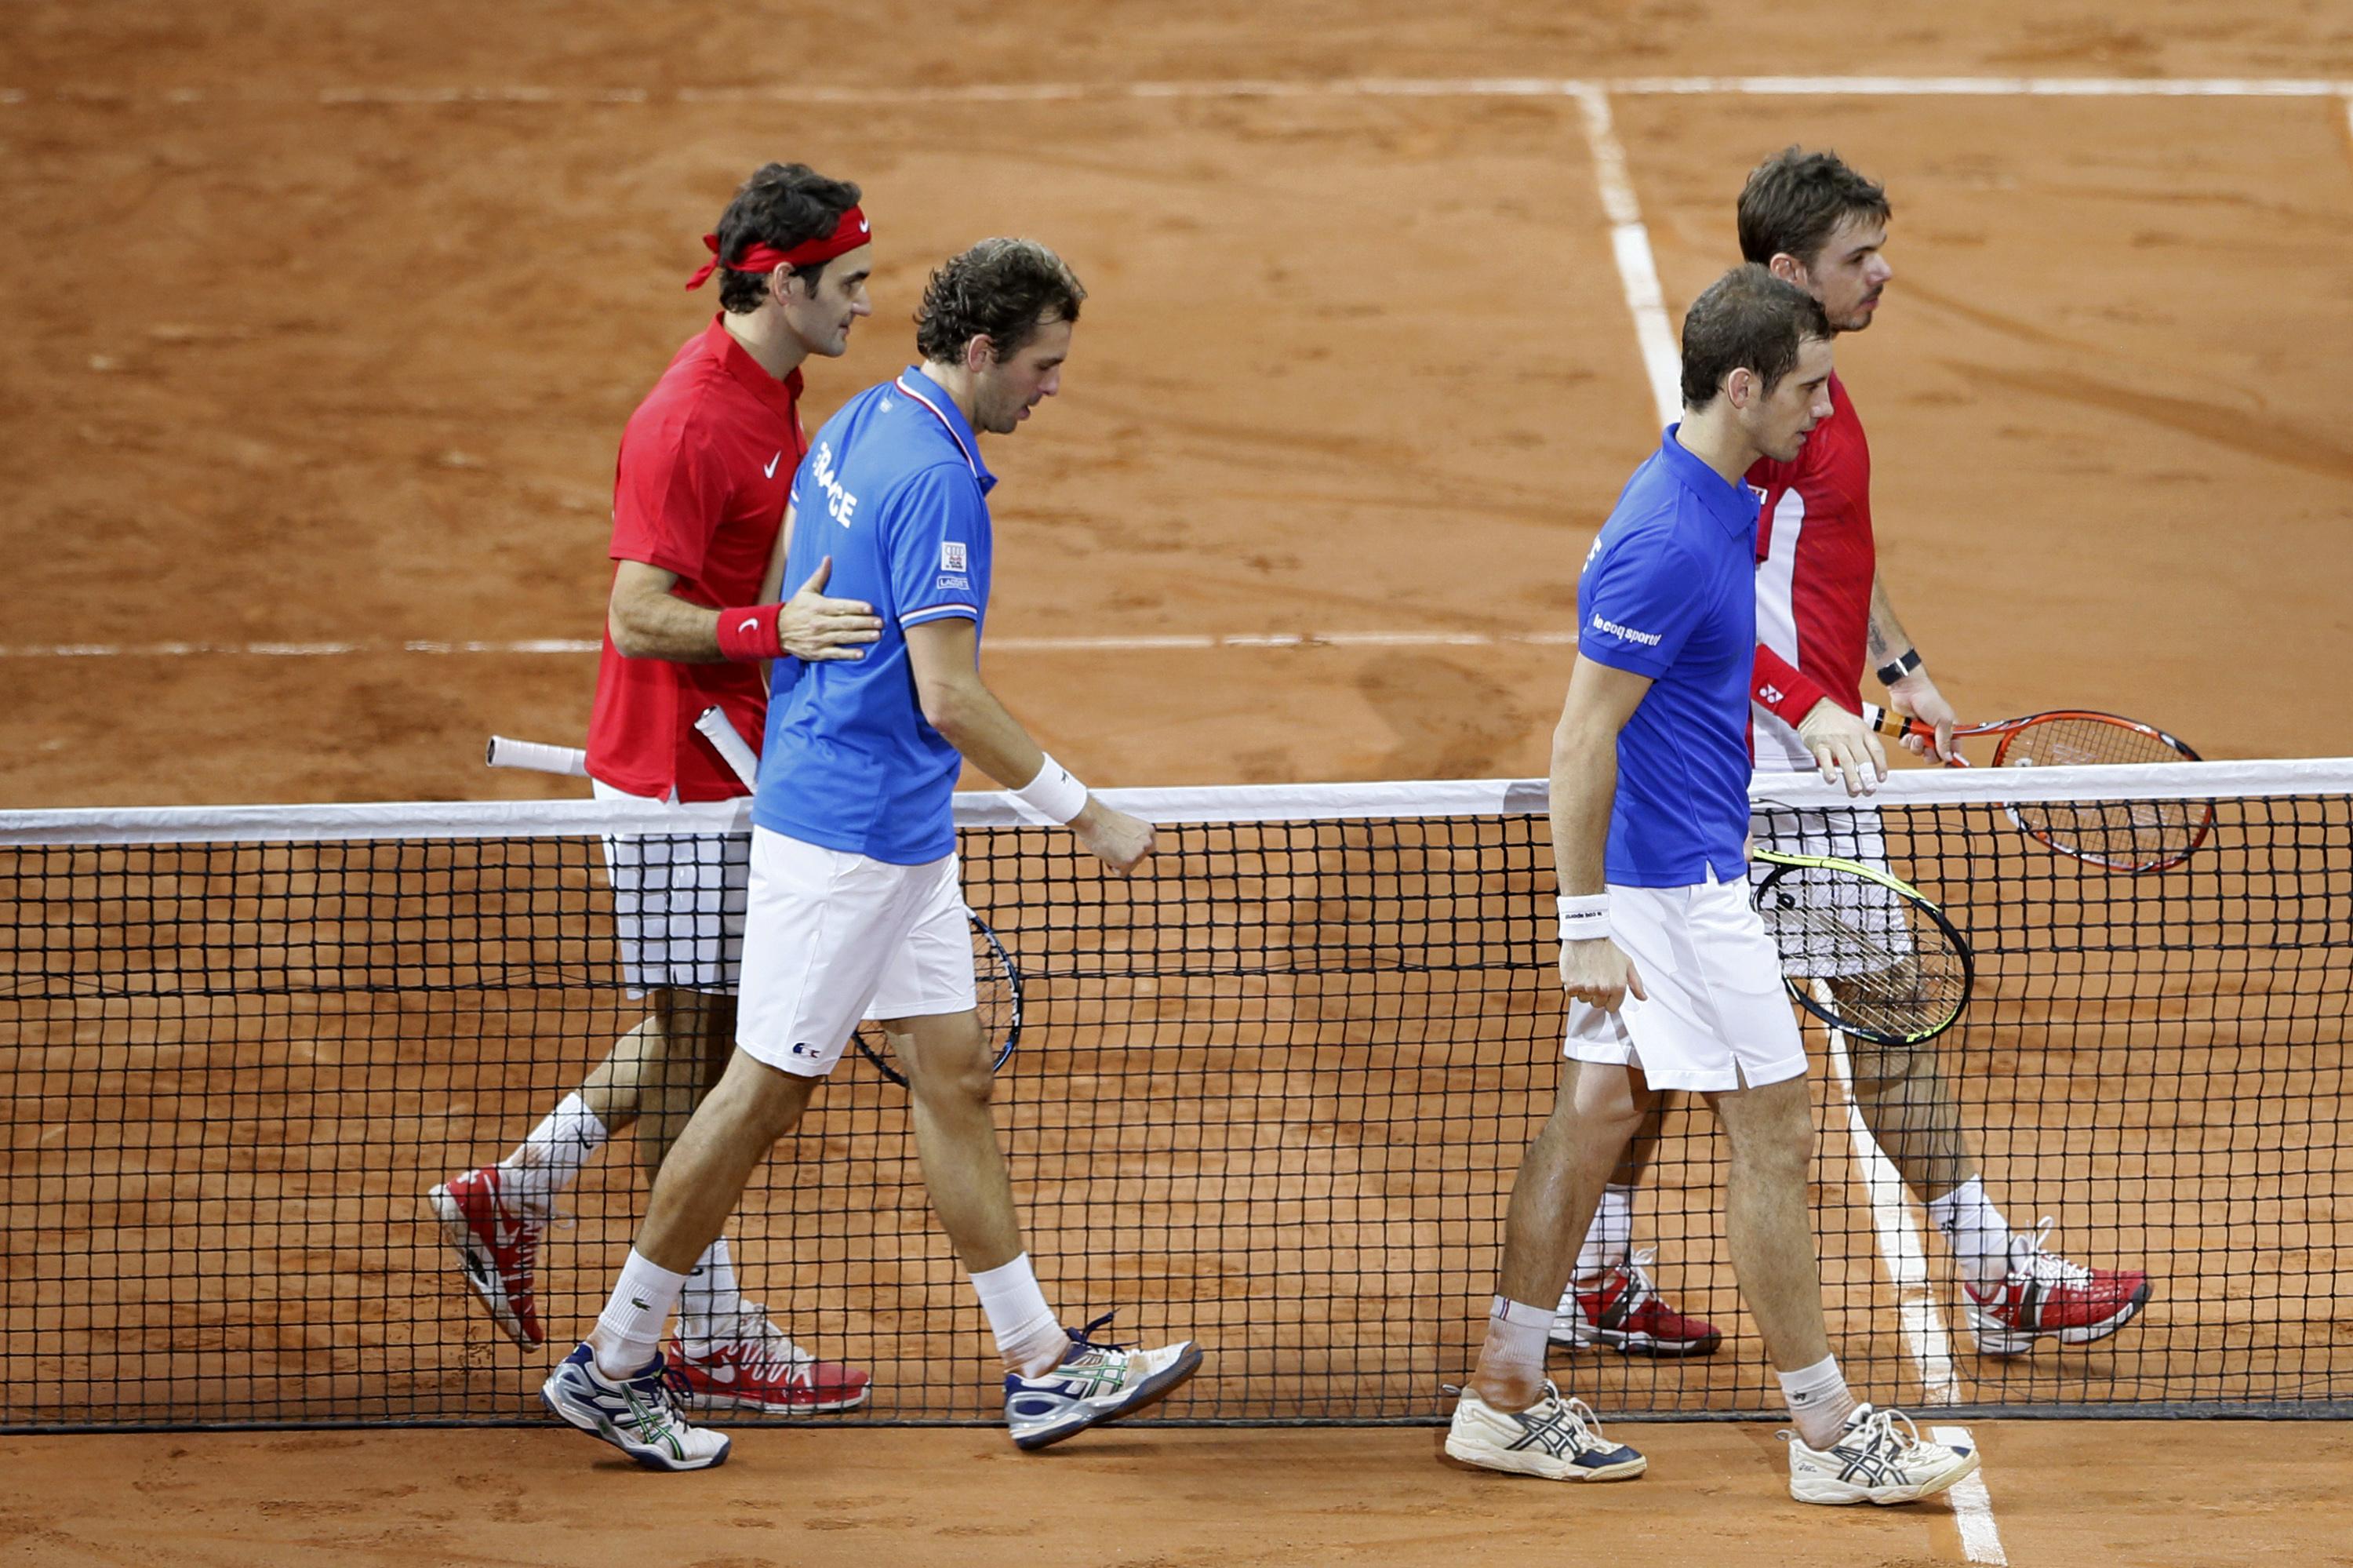 Das Duo Federer/Wawrinka ging als Sieger vom Platz, die beiden Neulinge Julien Benneteau (links) und Richard Gasquet unterlag deutlich.